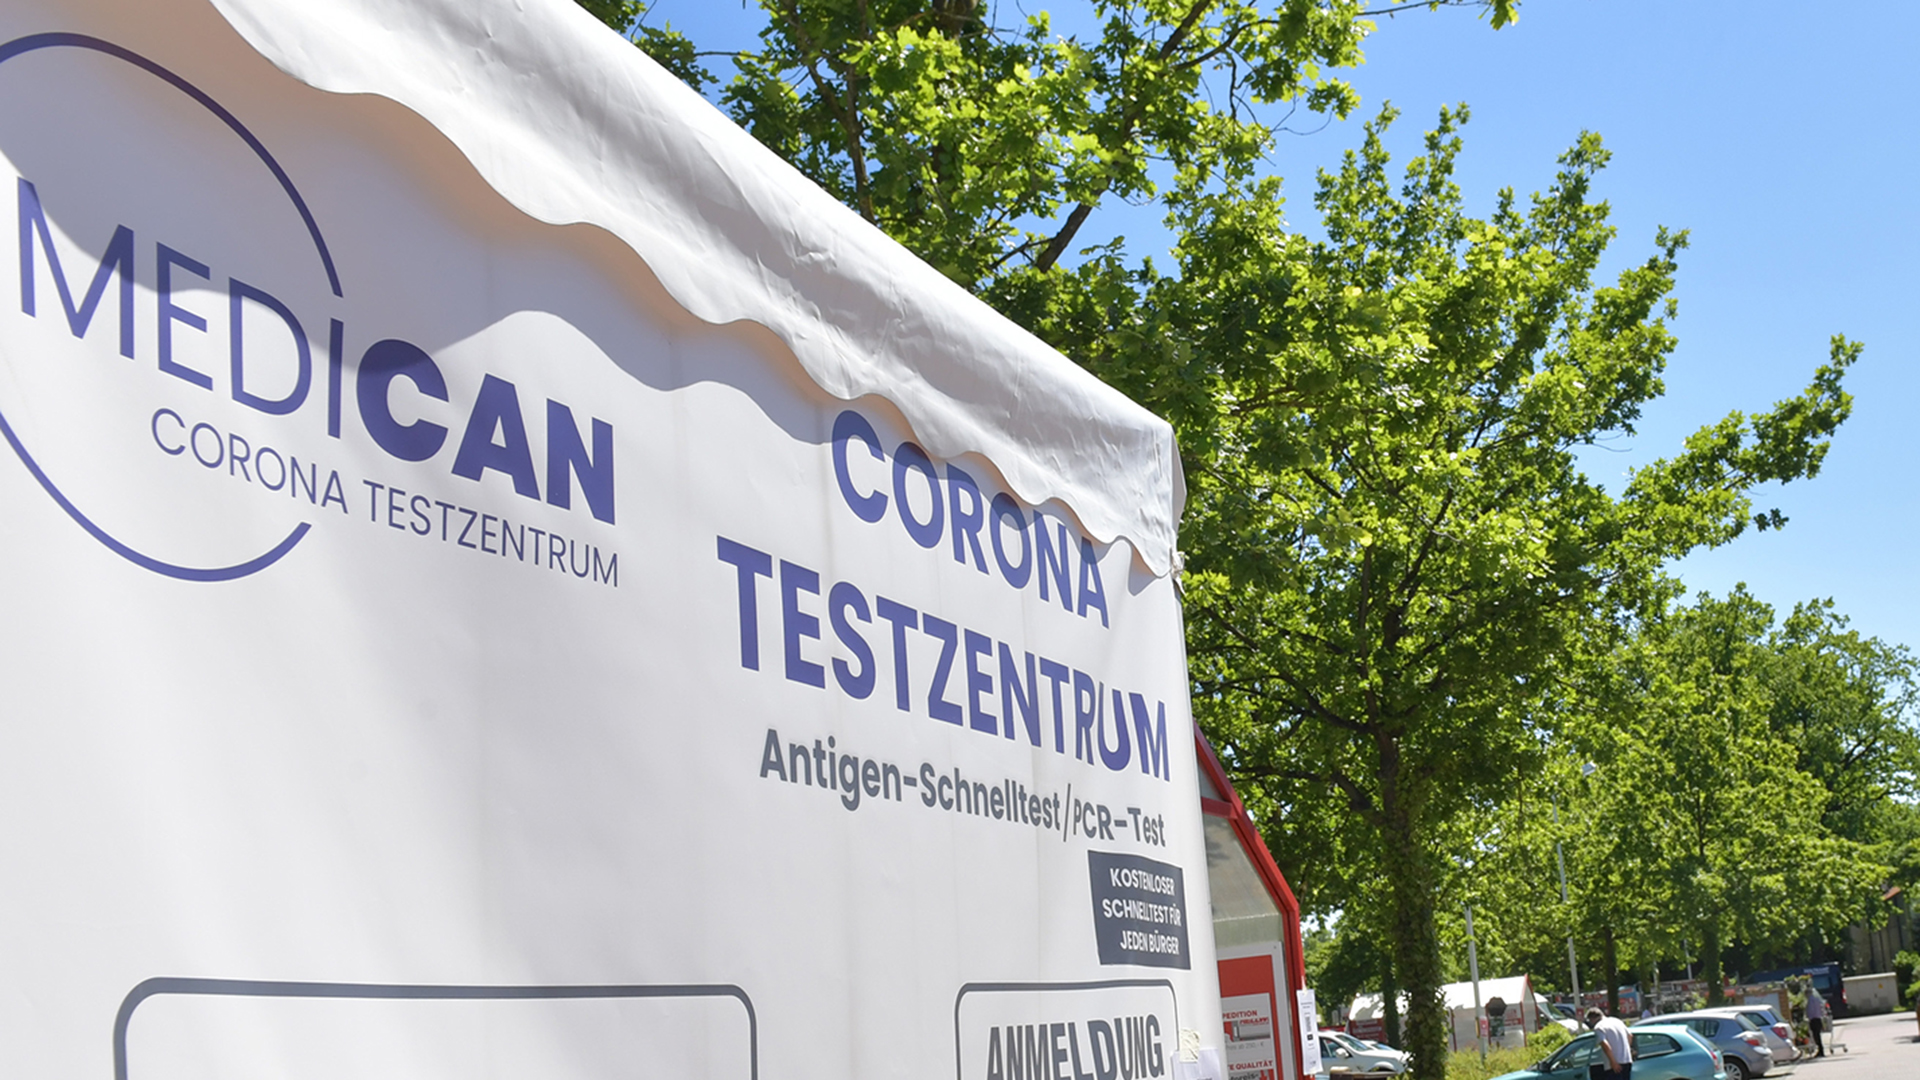 Ein Zelt der Firma MediCan steht auf dem Parkplatz eines Baumarkts | picture alliance/dpa/Jens Dünh